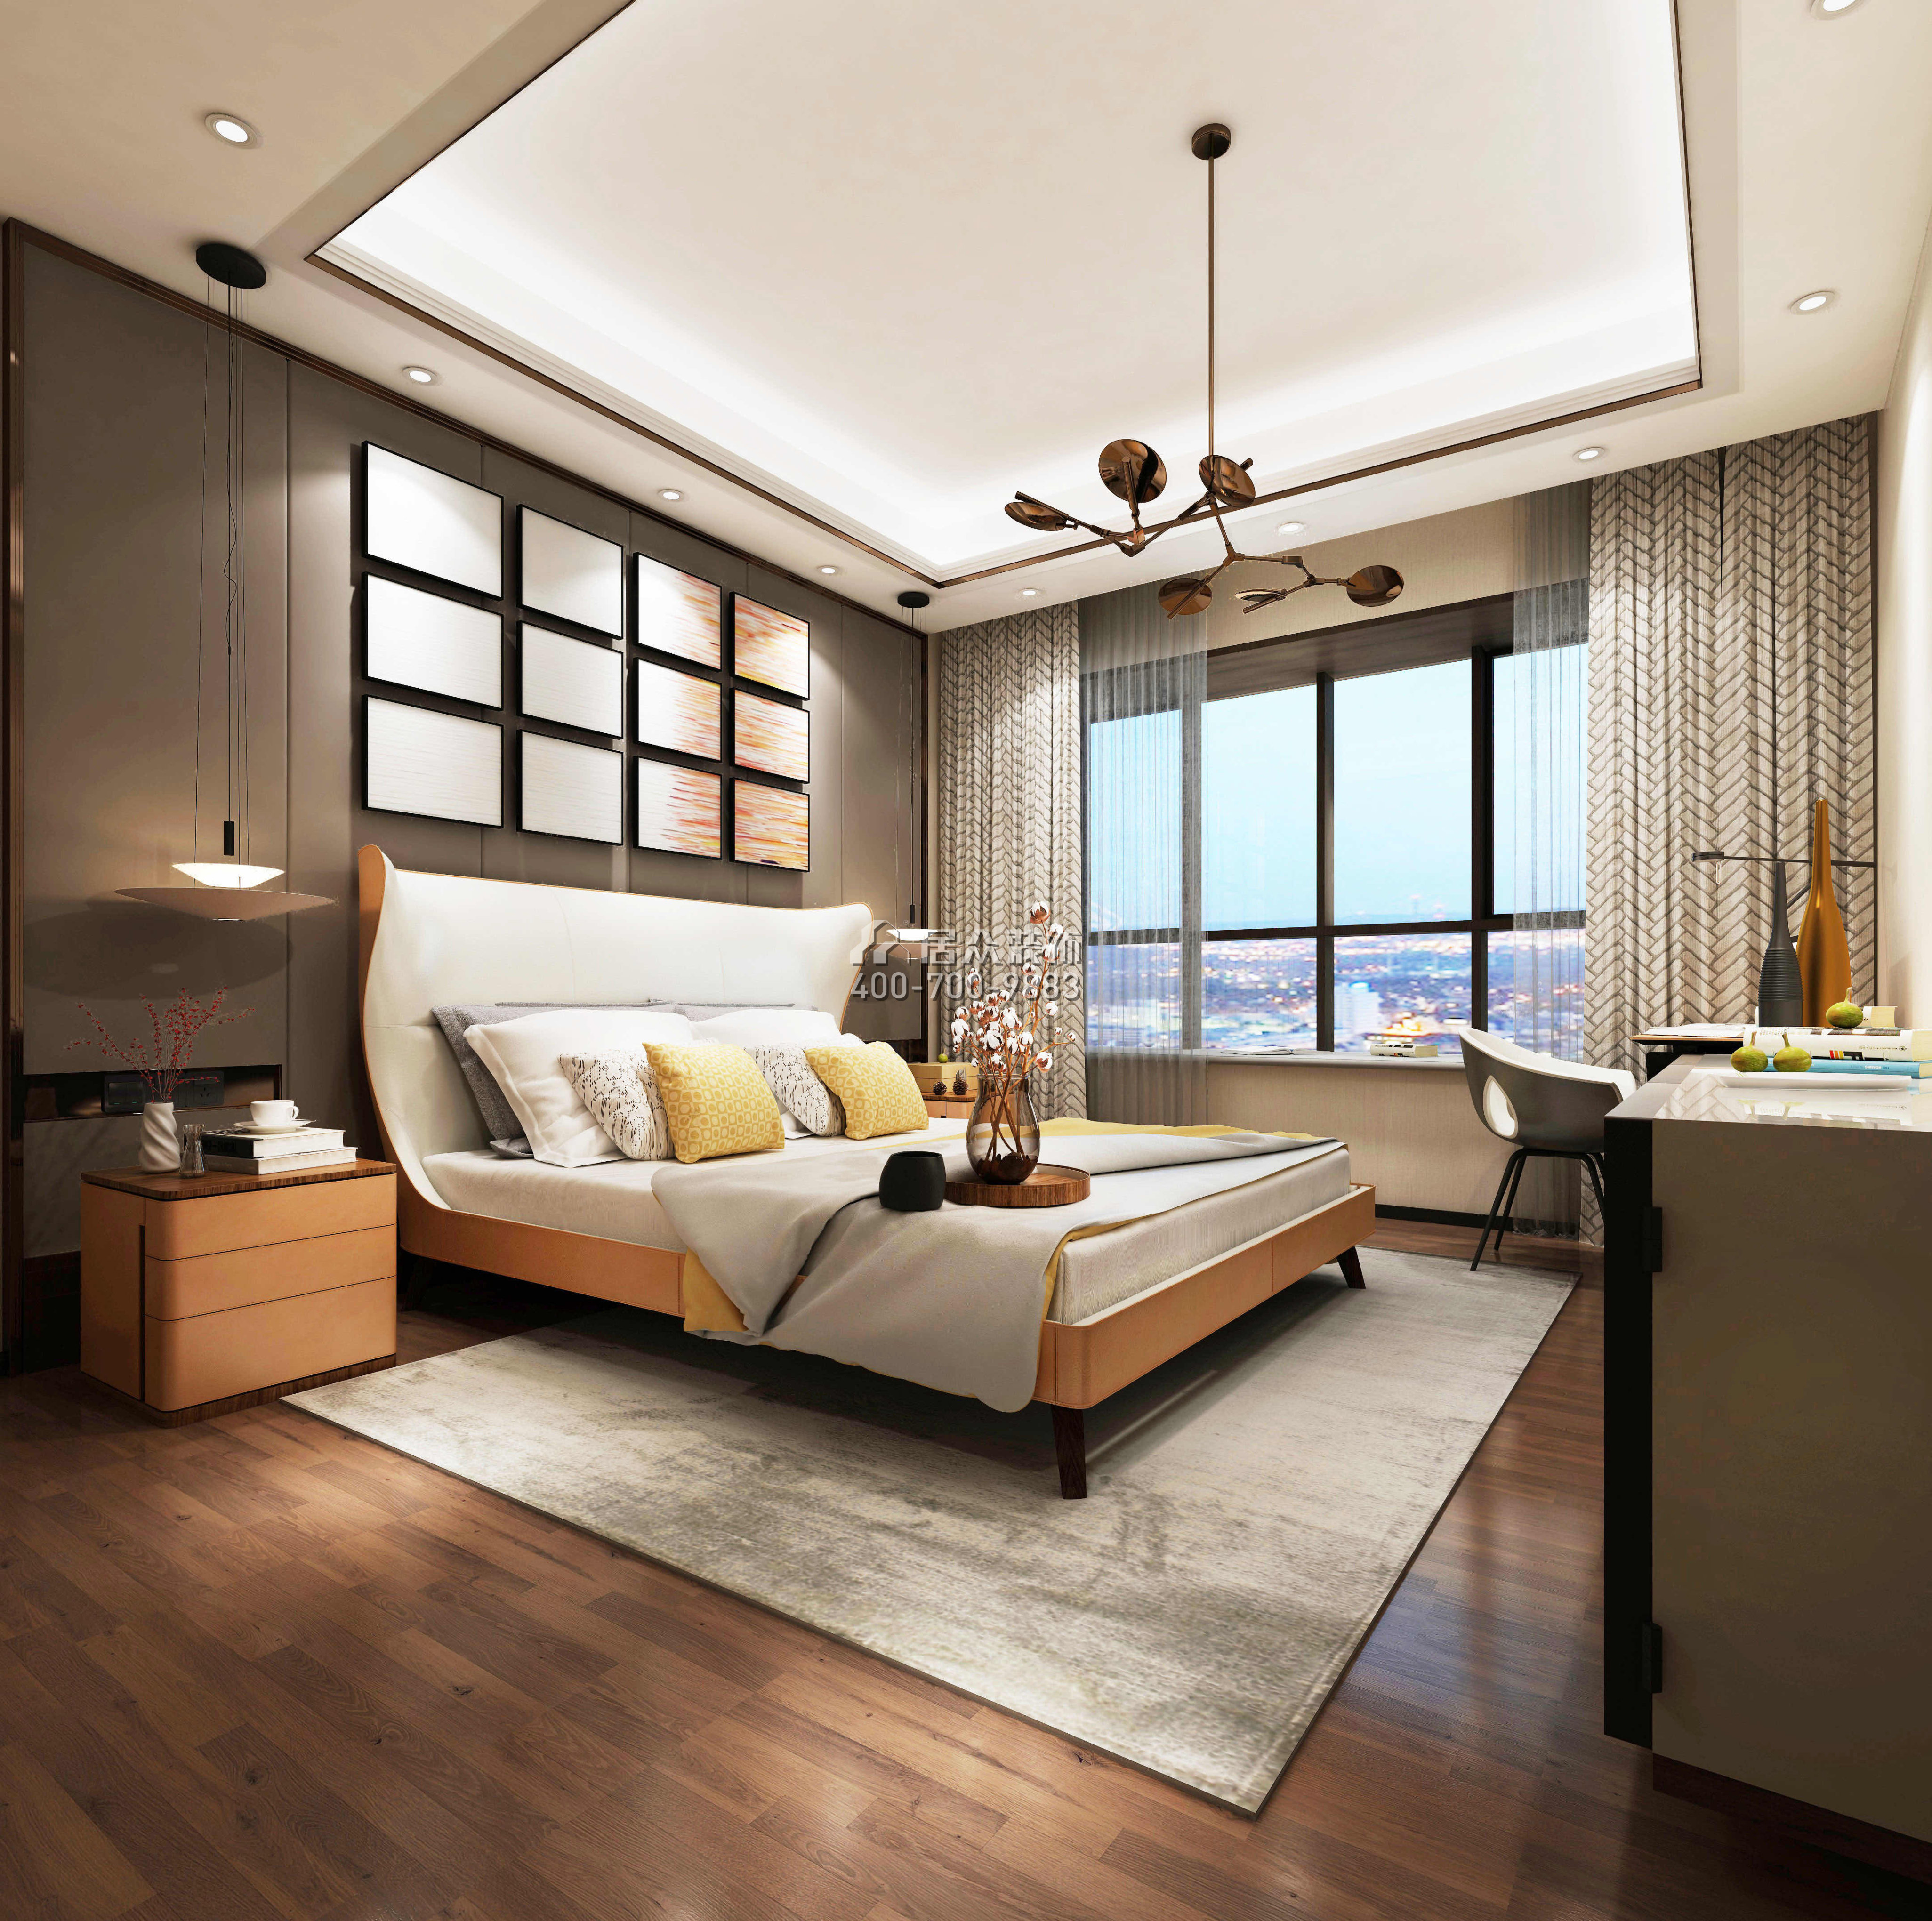 中海銀海灣500平方米現代簡約風格復式戶型臥室裝修效果圖